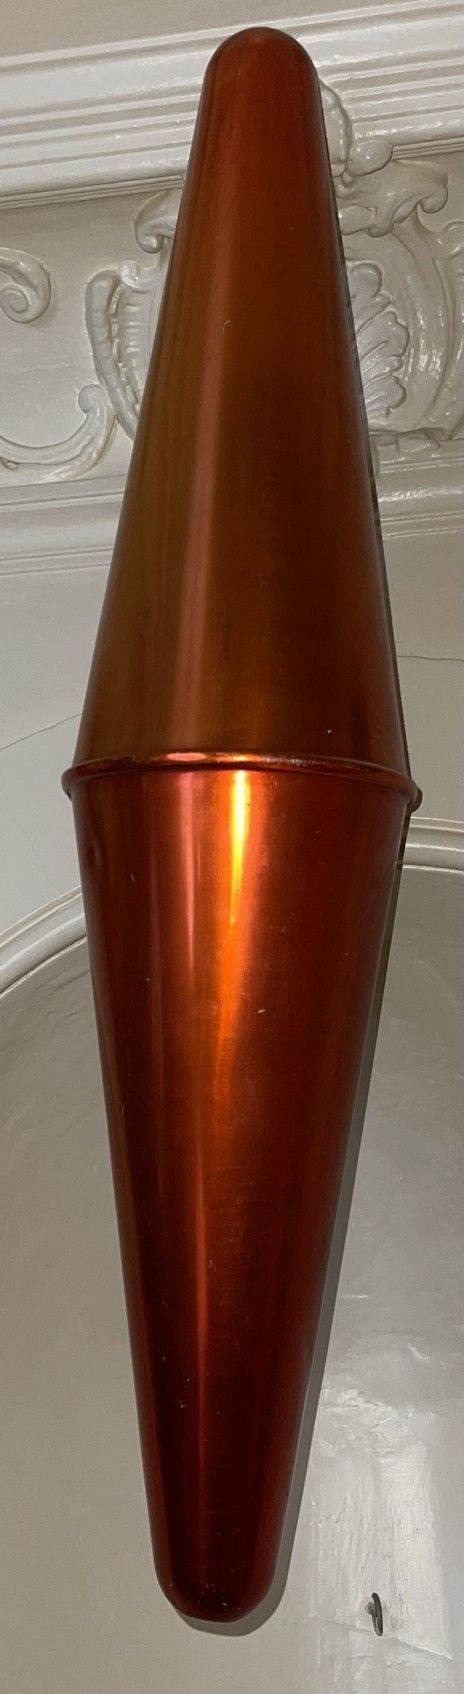 Null Tabakkarotte aus bemaltem Blech

Modern

H.: 79 cm (Stöße)